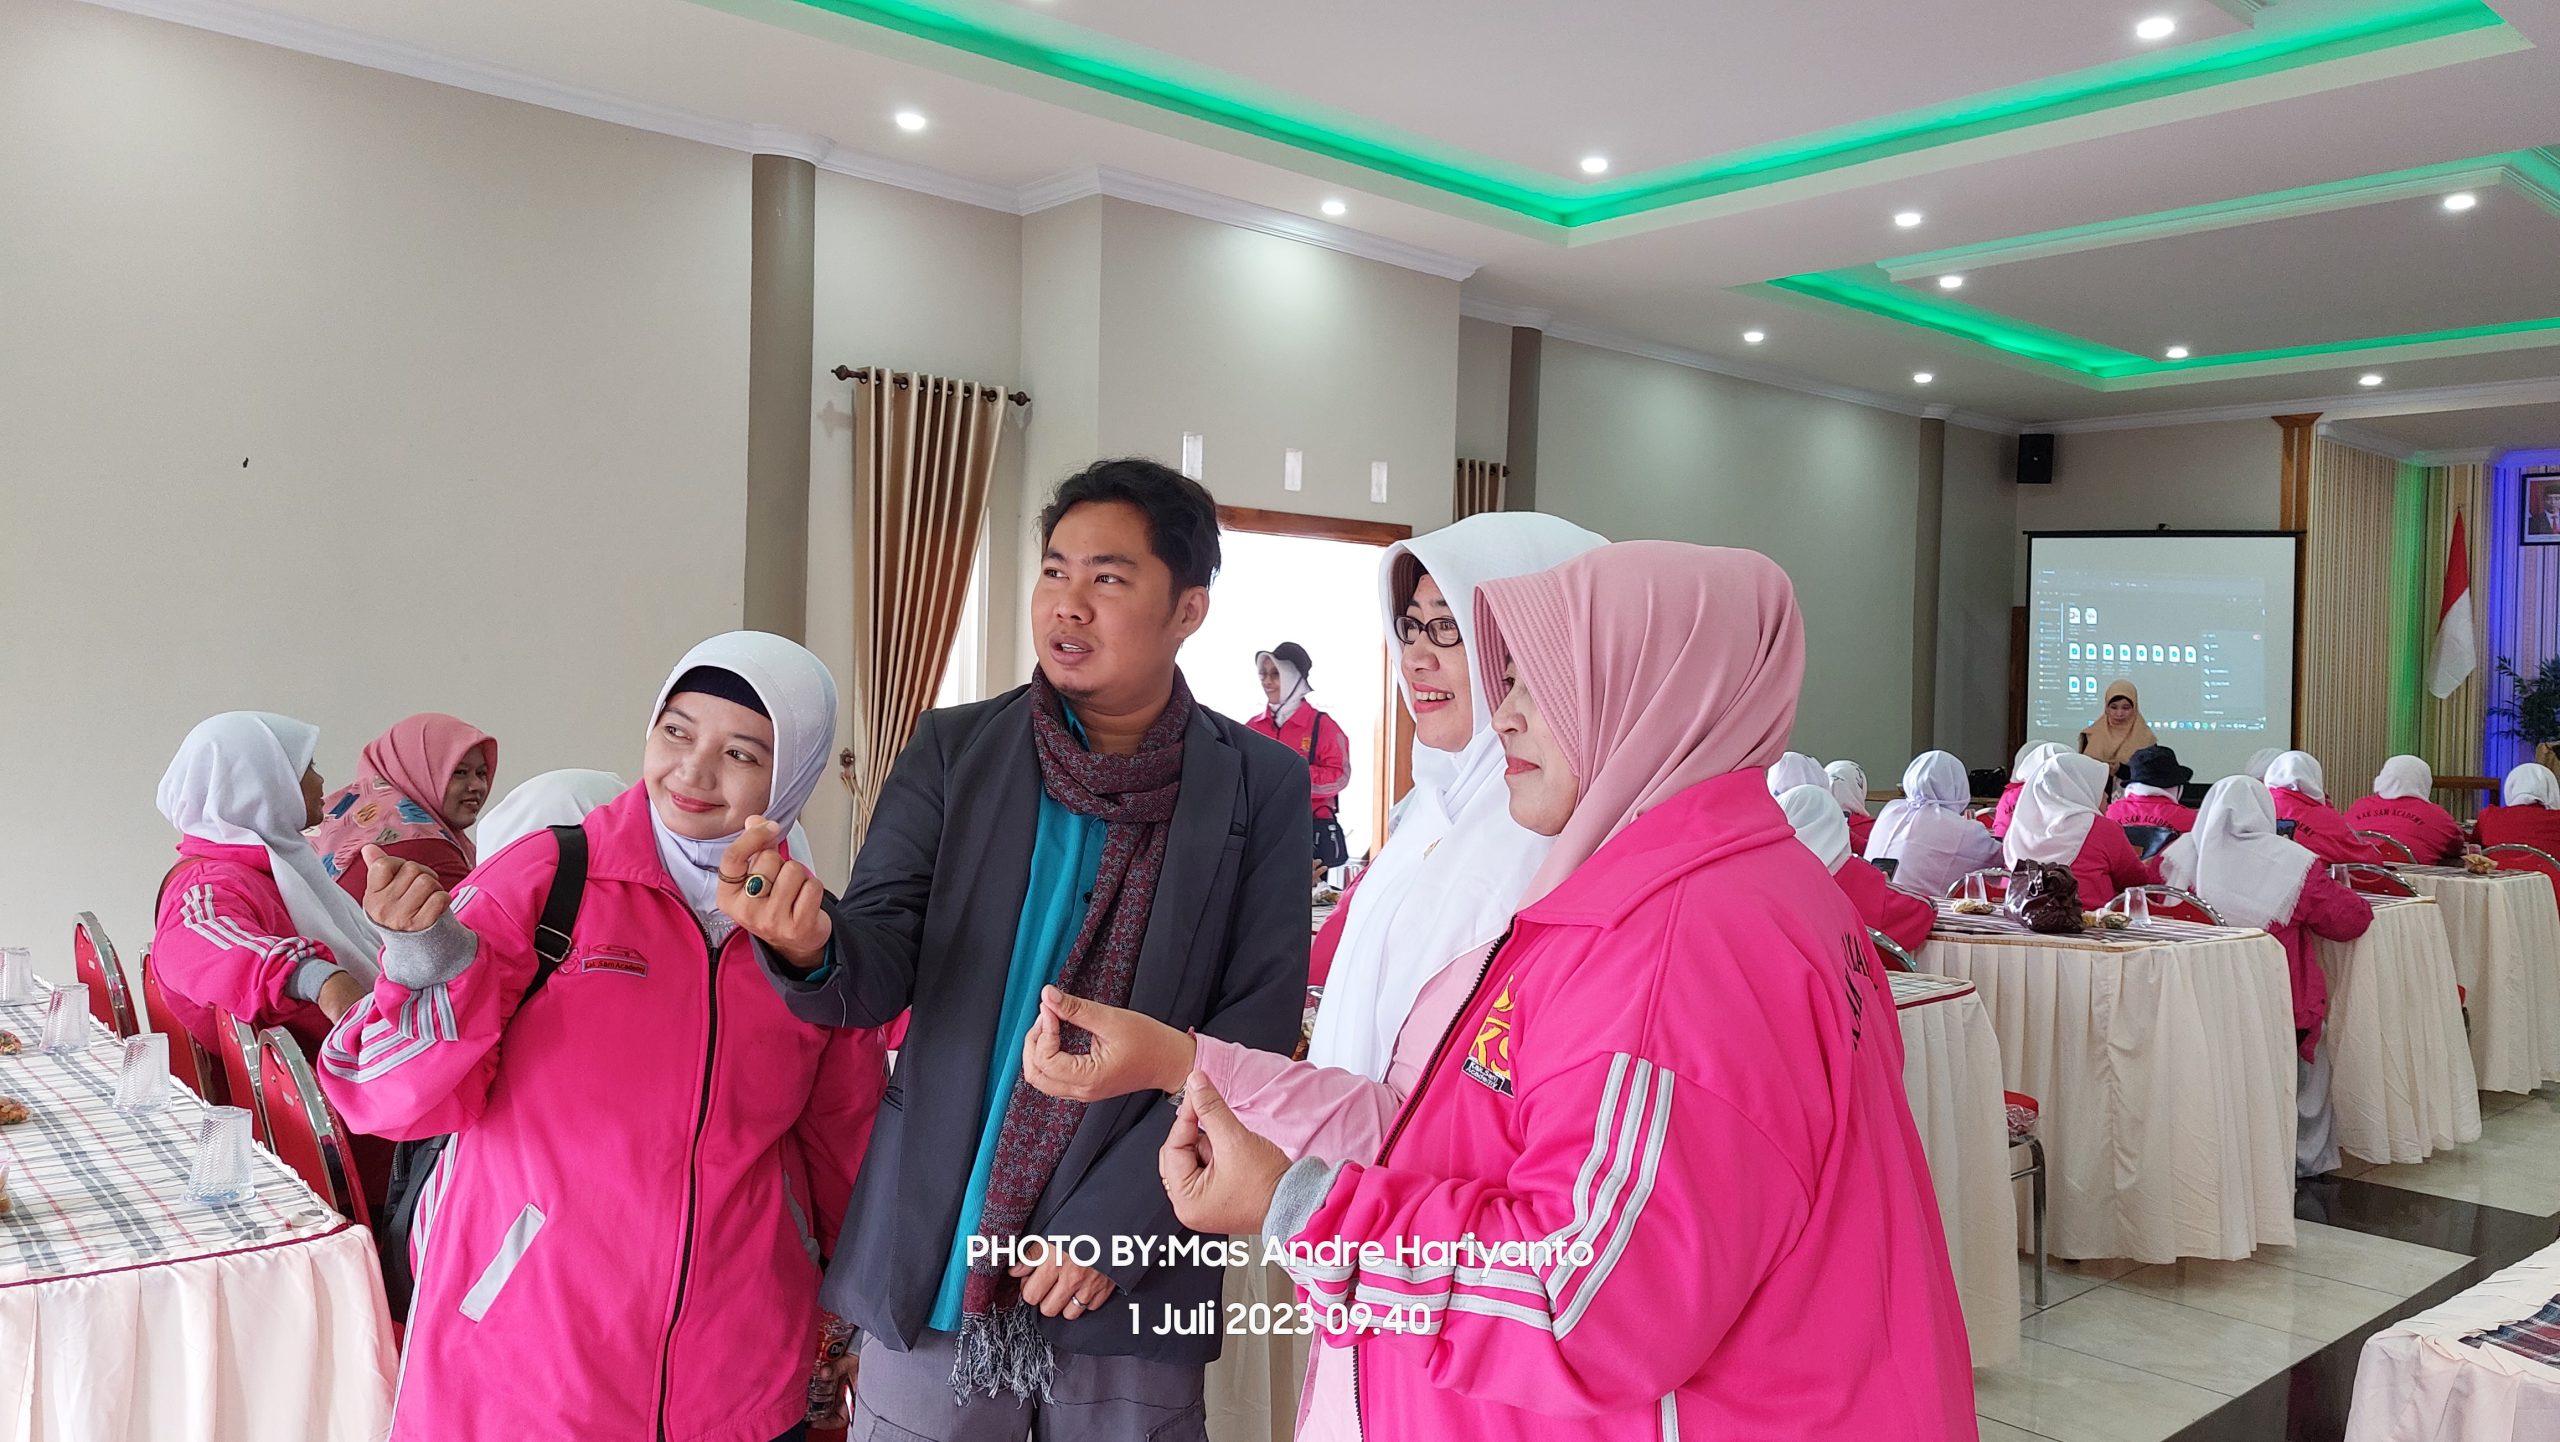 KSA Sukses Gelar Family Gathering dan Tasyakuran Kelulusan di Mojokerto. Foto: Mas Andre Hariyanto & Mbak Aisyah Putri (SUARA UTAMA)